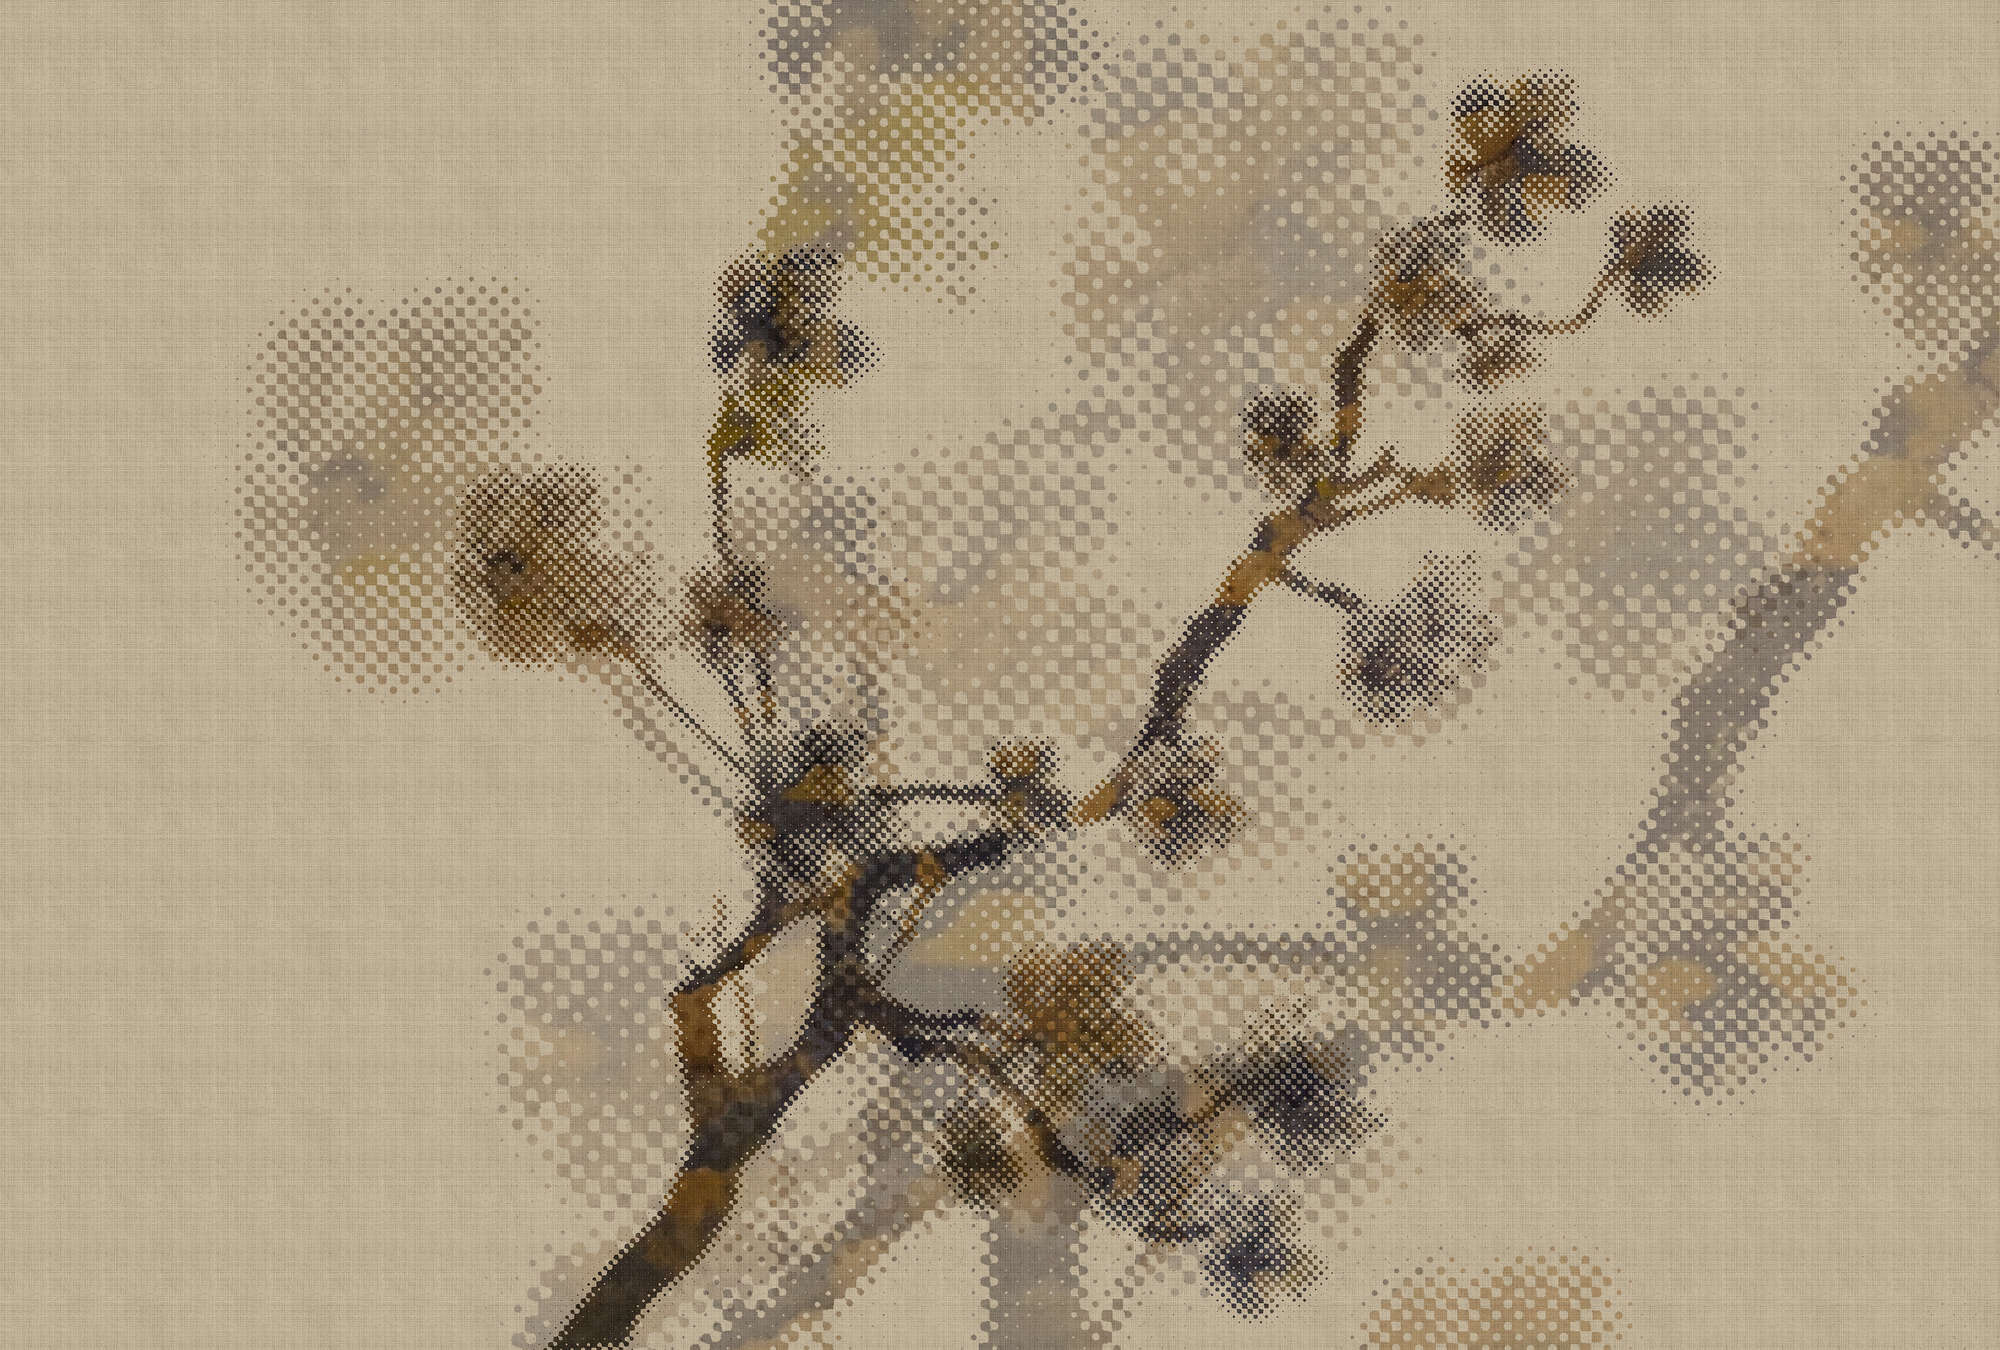             Twigs 2 - Papel pintado en estructura de lino natural con motivo de ramitas y diseño pixelado - Vellón liso beige | nácar
        